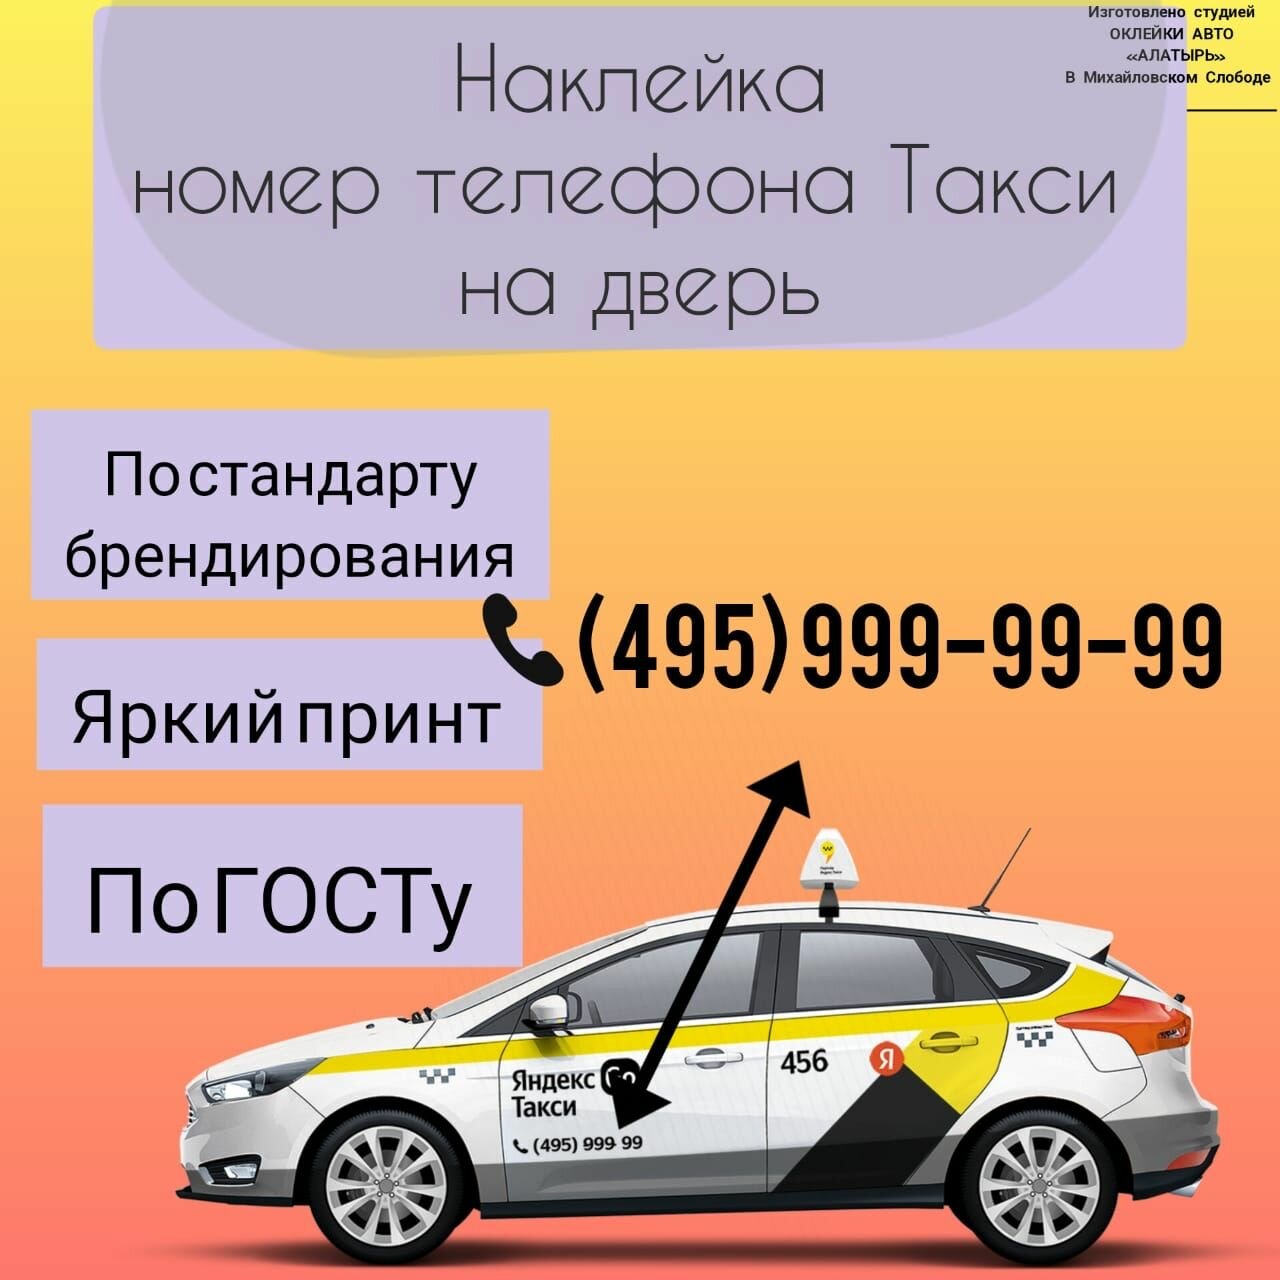 Наклейка "Телефон на дверь" для такси